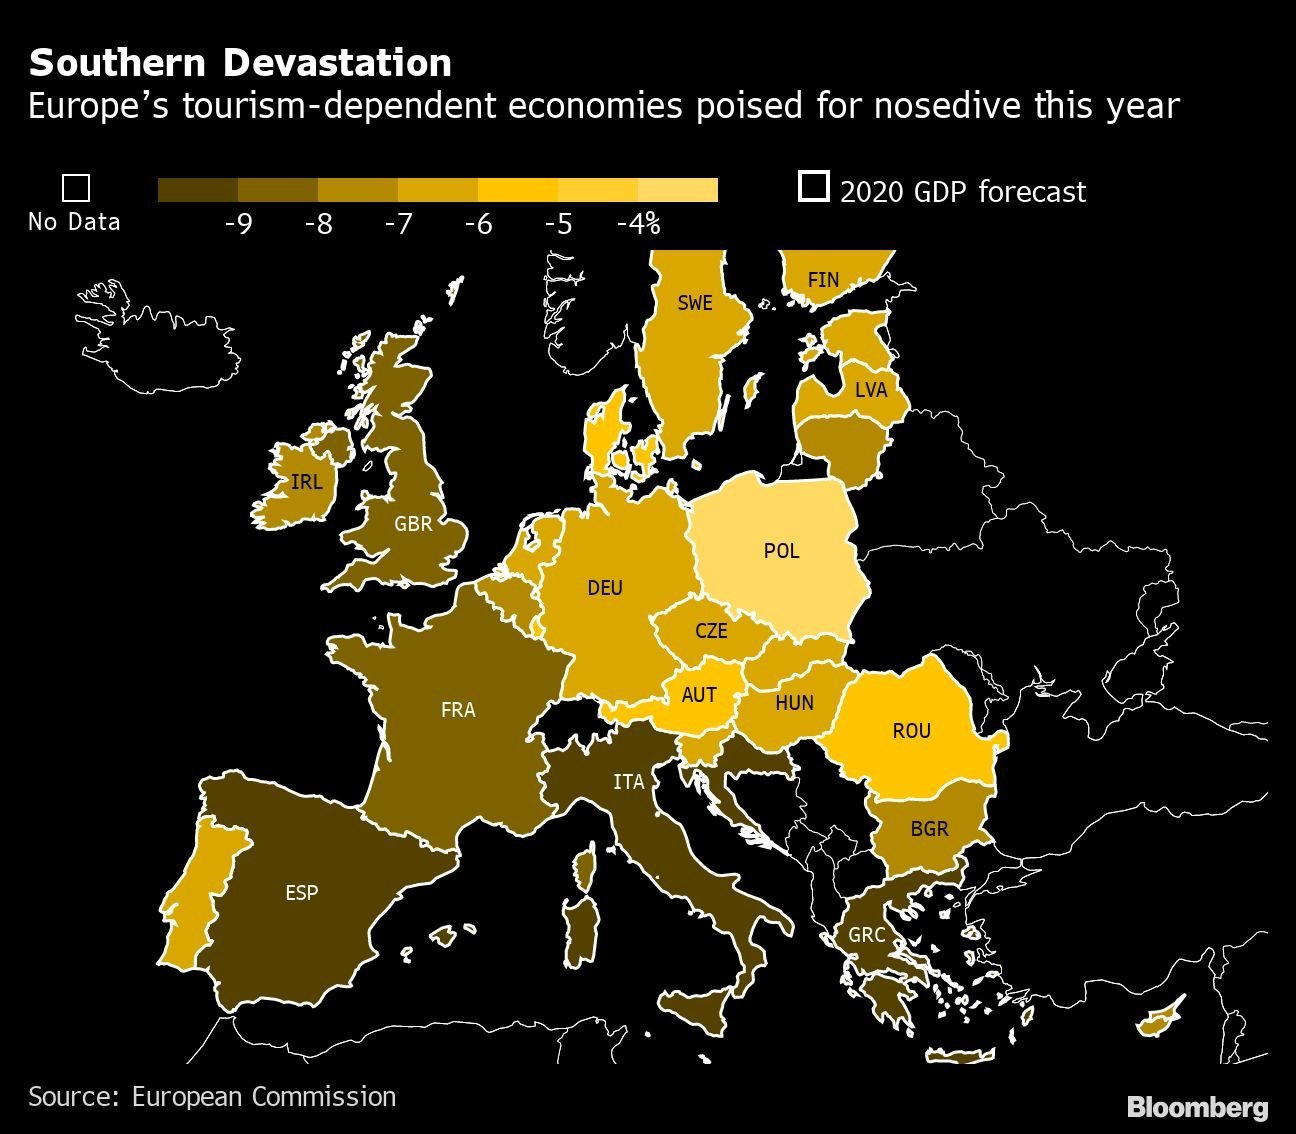 Devastação no Sul: economias dependentes do turismo na Europa preparadas para queda este ano